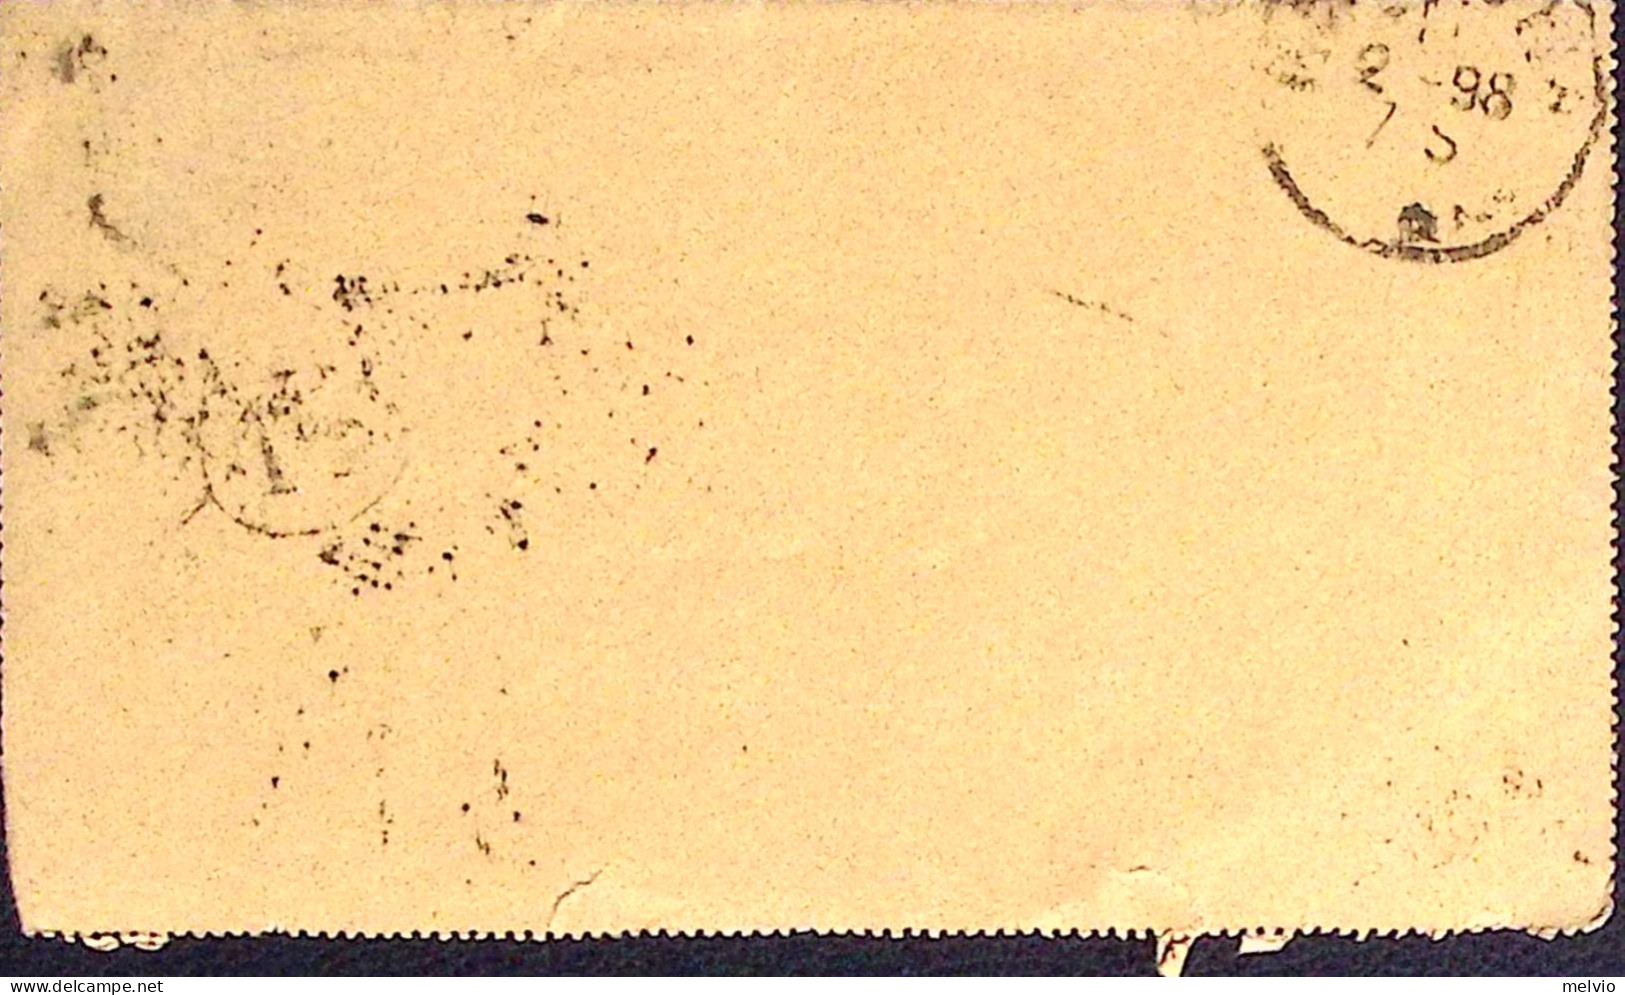 1898-BIGLIETTO POSTALE Effigie C.20 Viaggiato Roma (10,8) Piccolo Strappo In Bas - Entiers Postaux